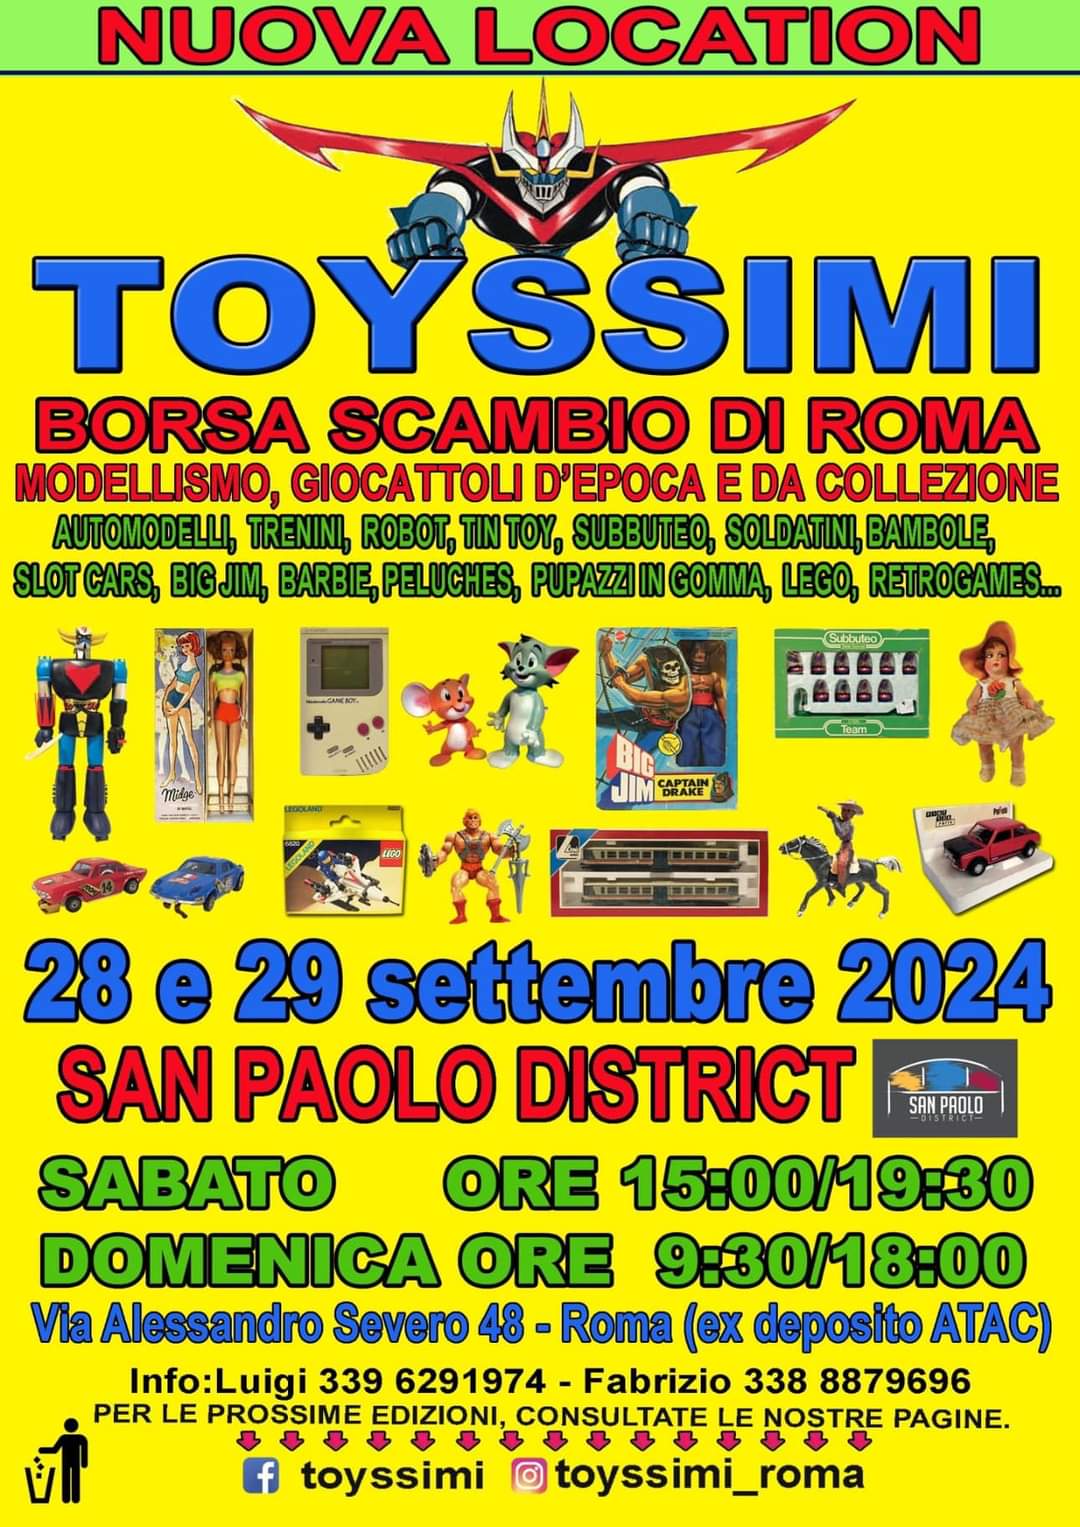 Ritorna Toyssimi, il 28 e 29 settembre 2024, al San Paolo District di Roma